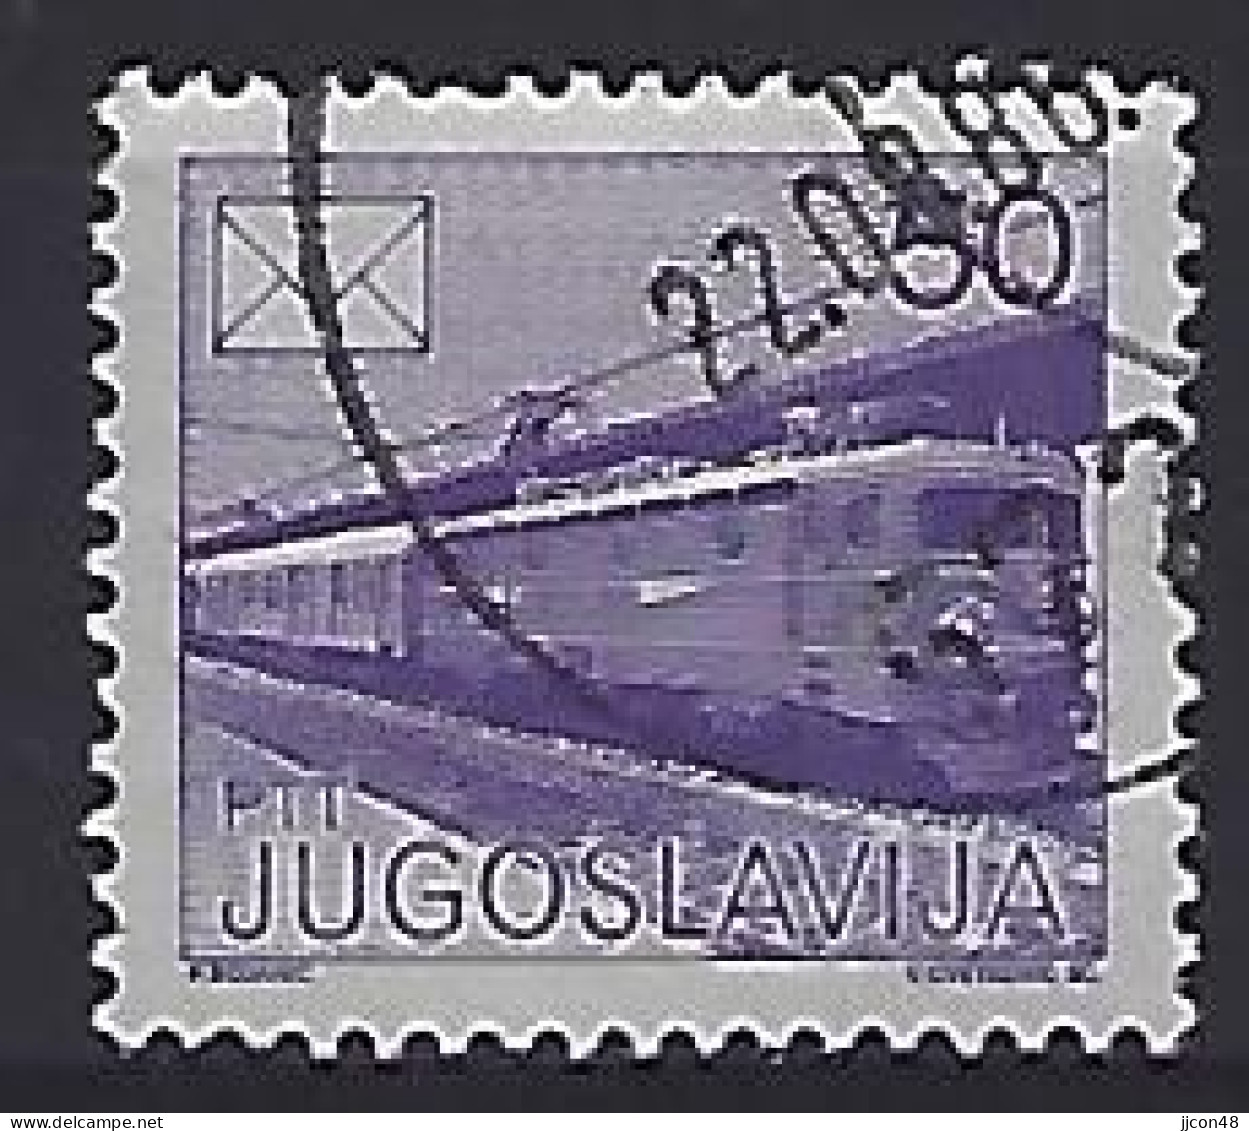 Jugoslavia 1986  Postdienst (o) Mi.2175 A - Gebruikt